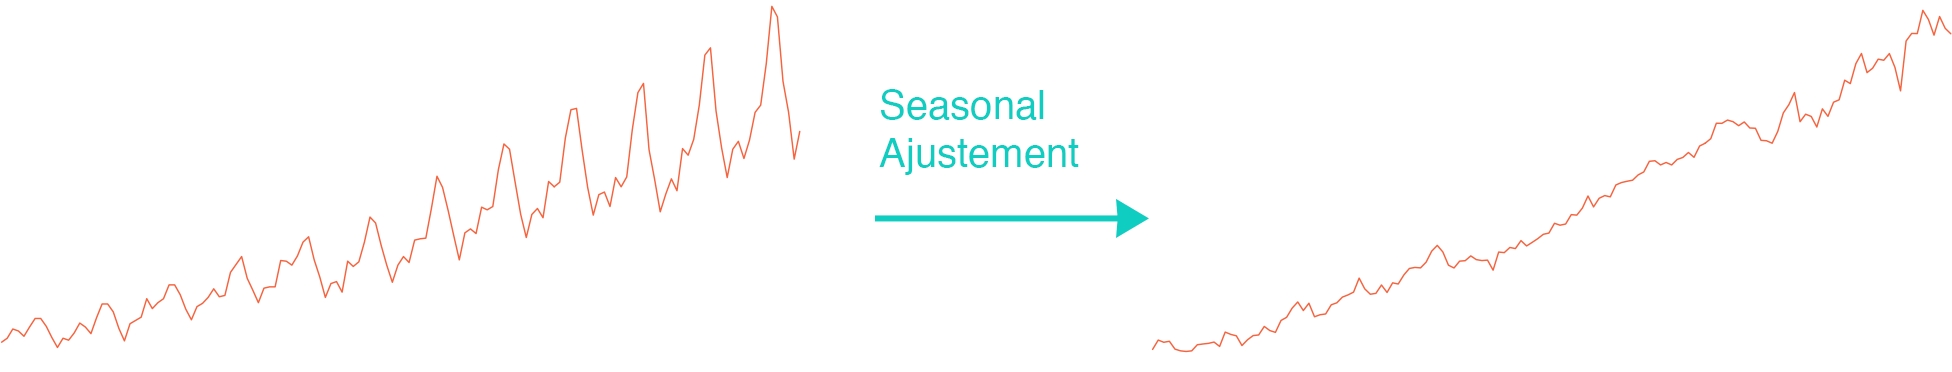 seasonal-adjustment